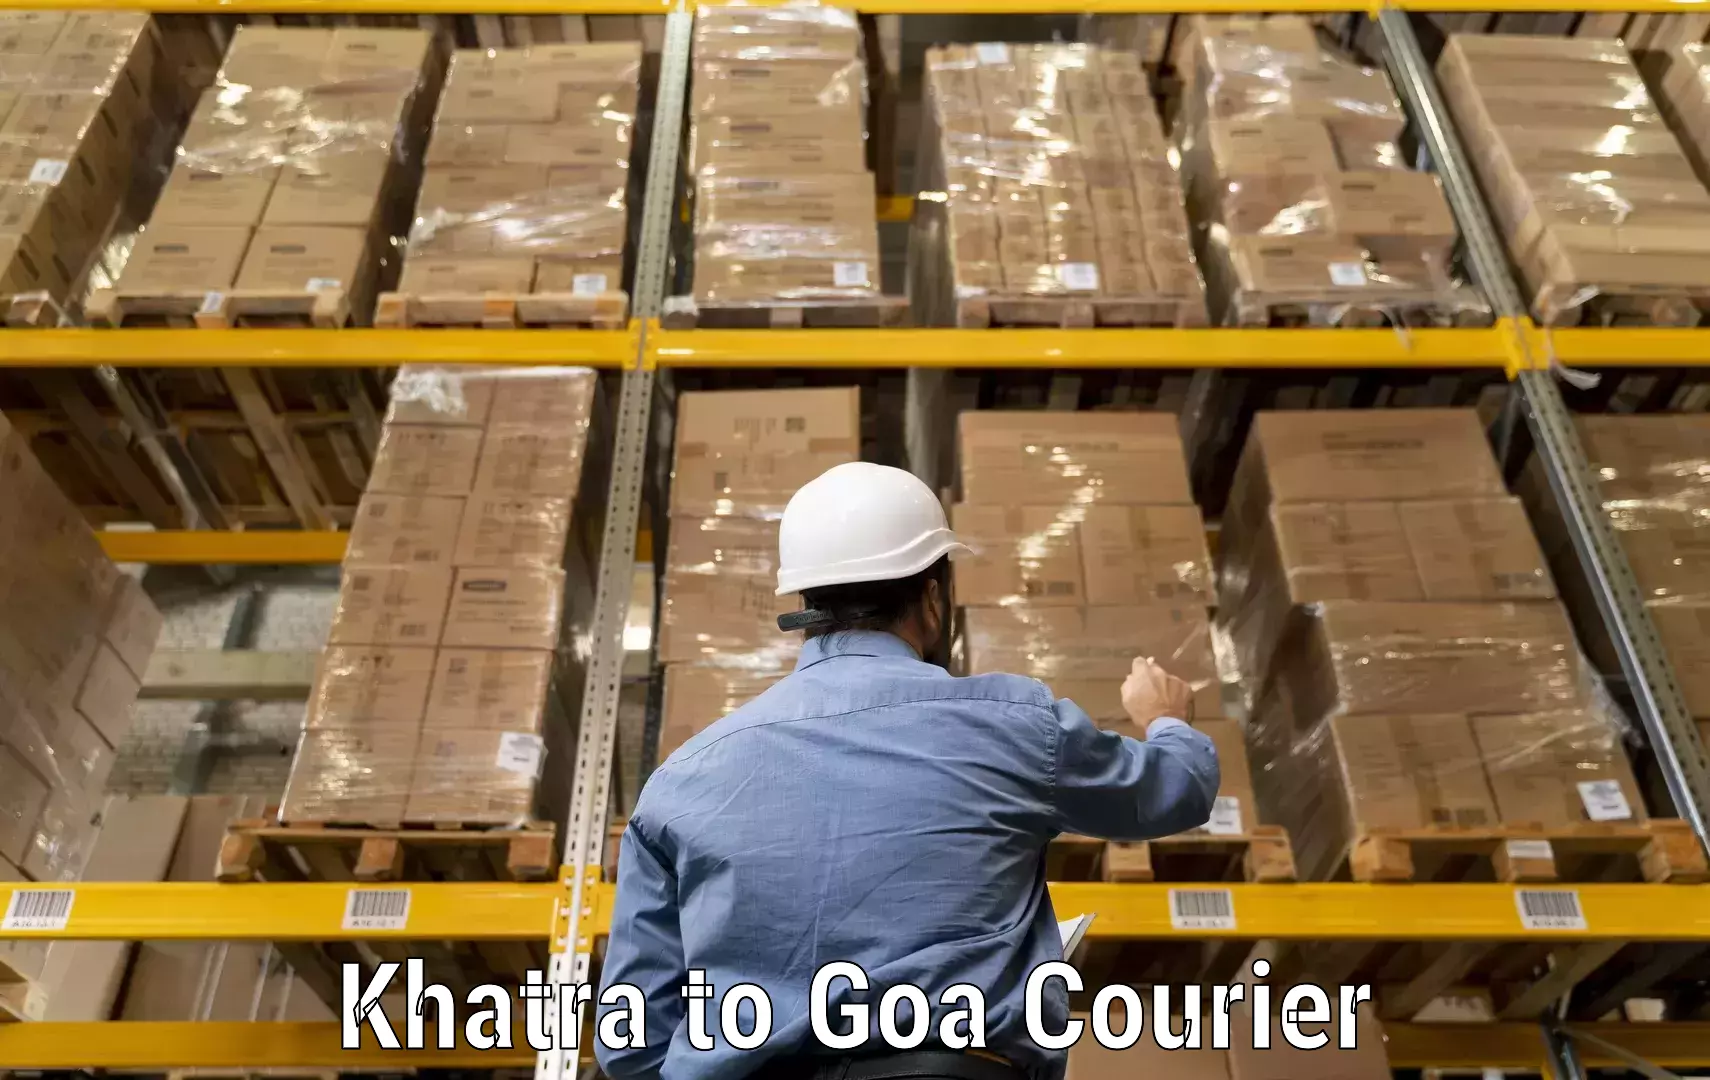 Express logistics service Khatra to Vasco da Gama